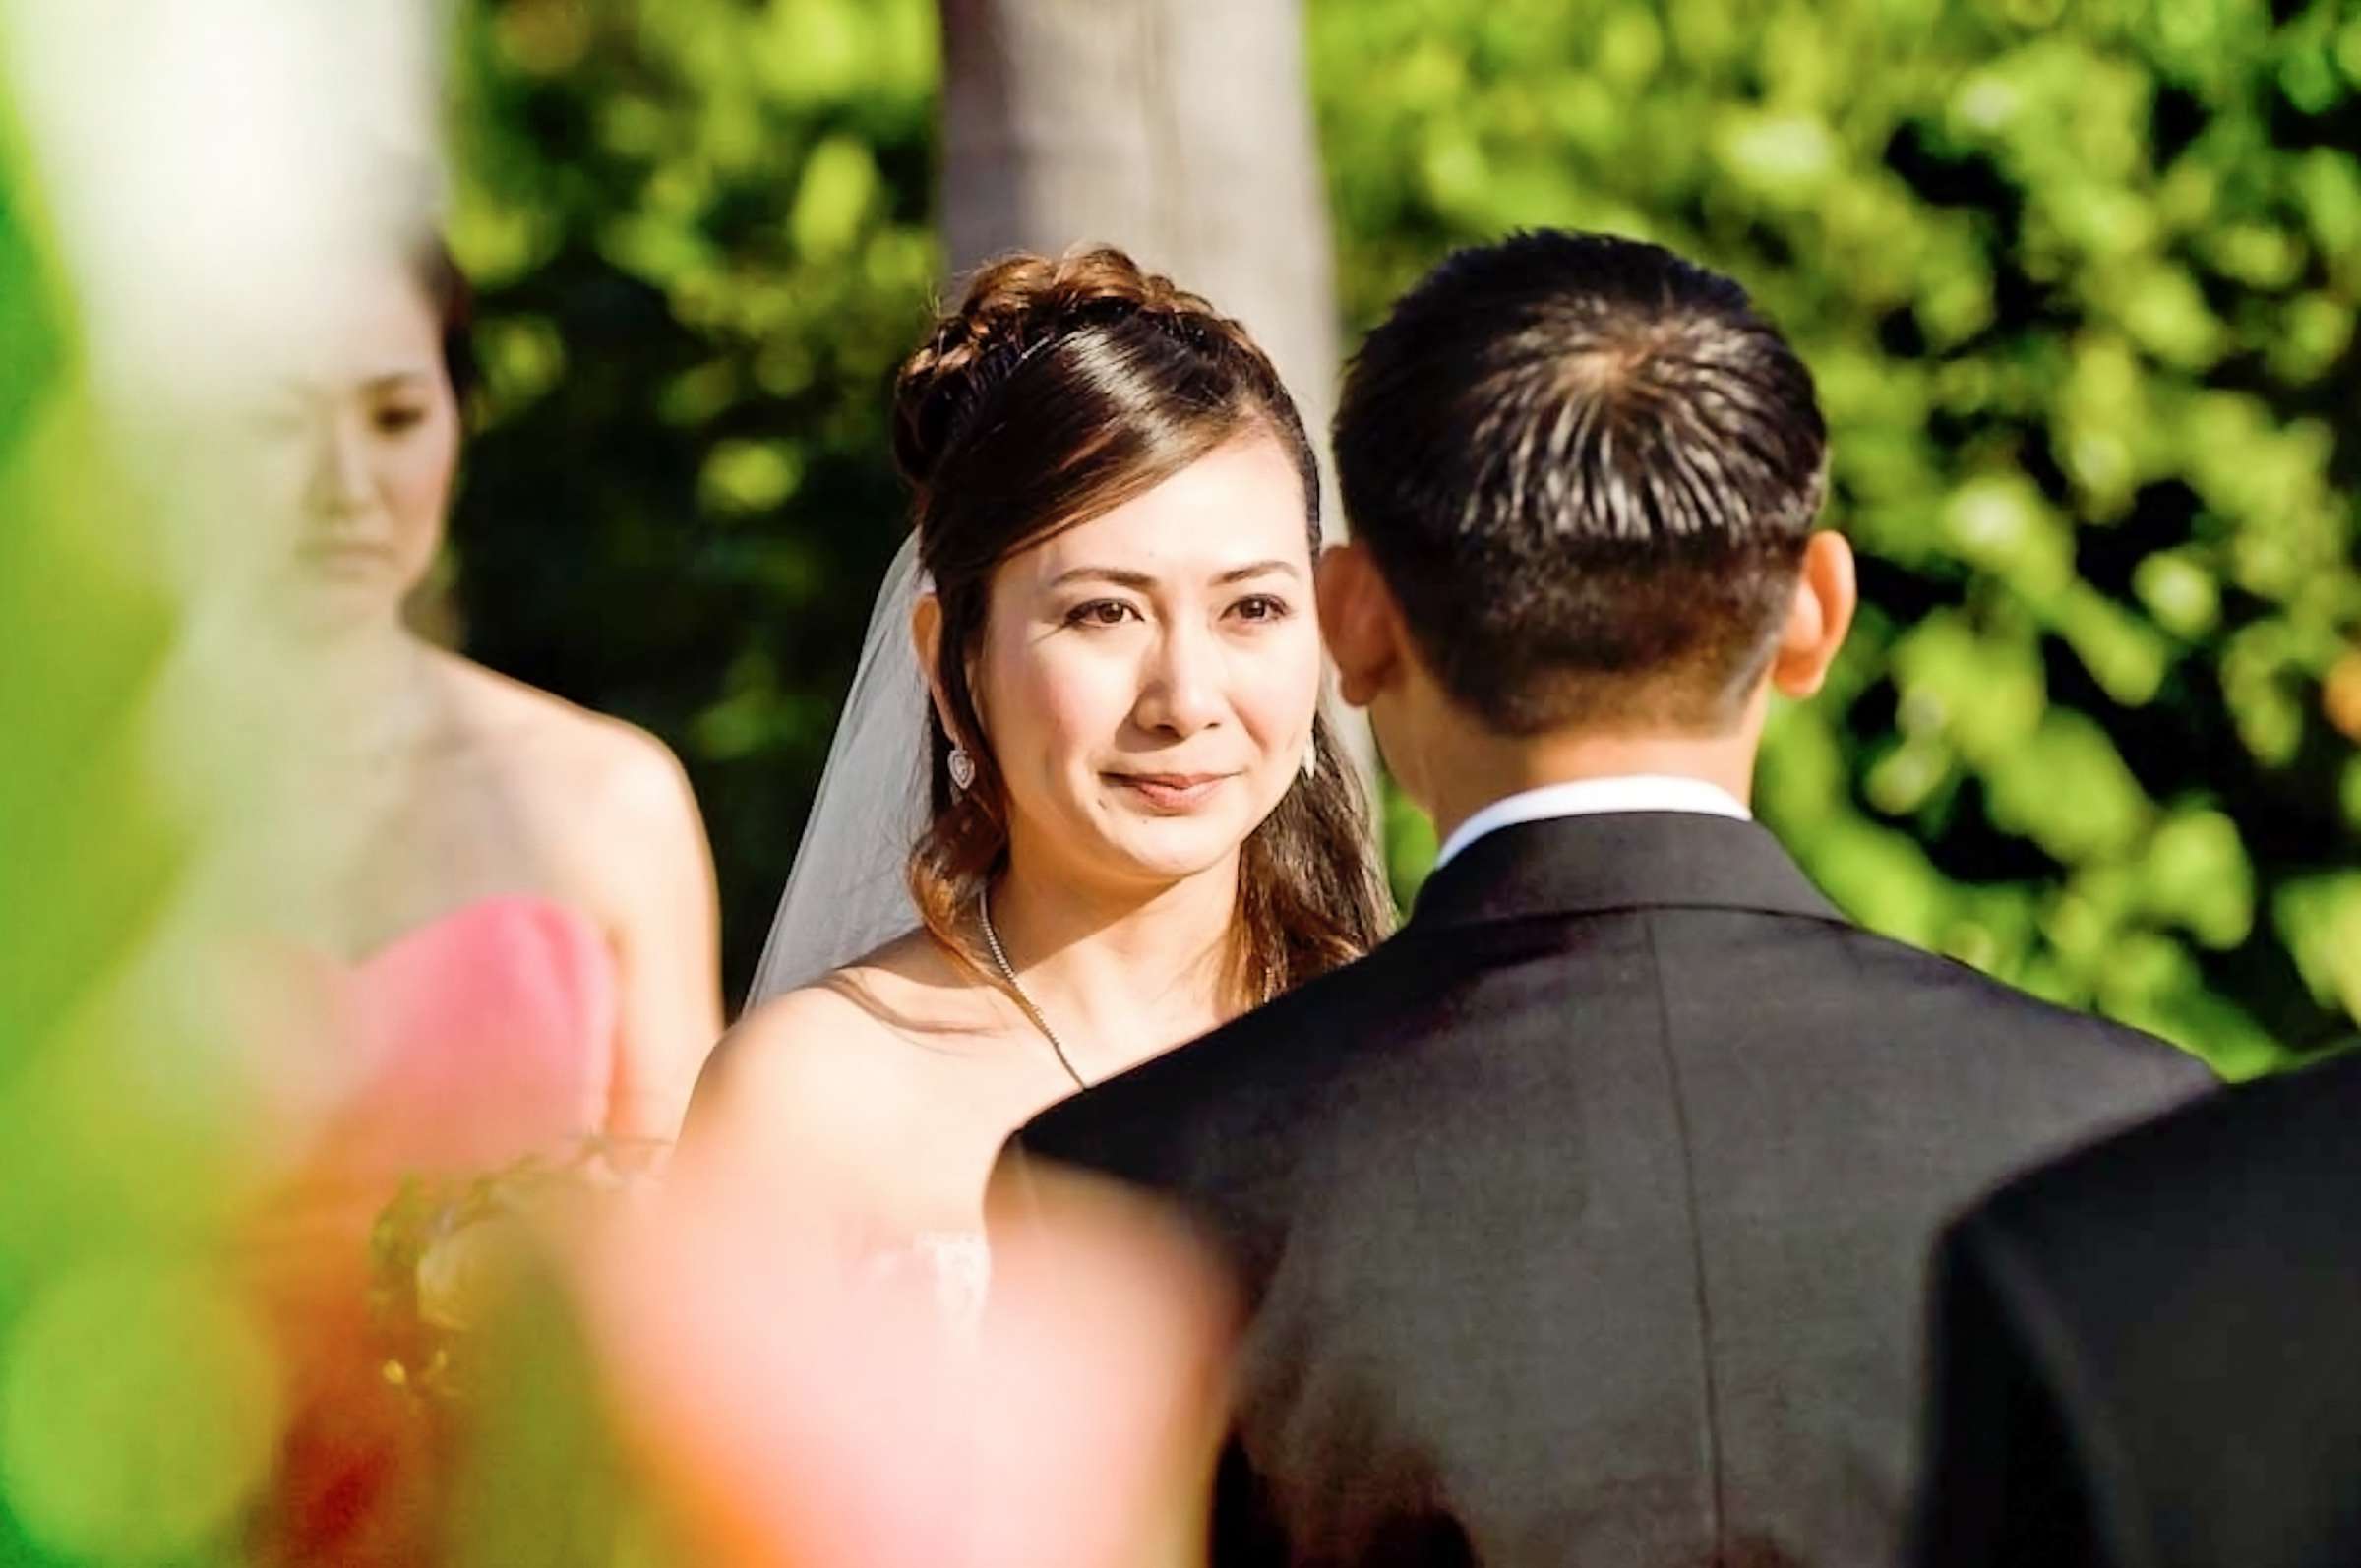 Park Hyatt Aviara Wedding, Sandra and Khoa Wedding Photo #299726 by True Photography